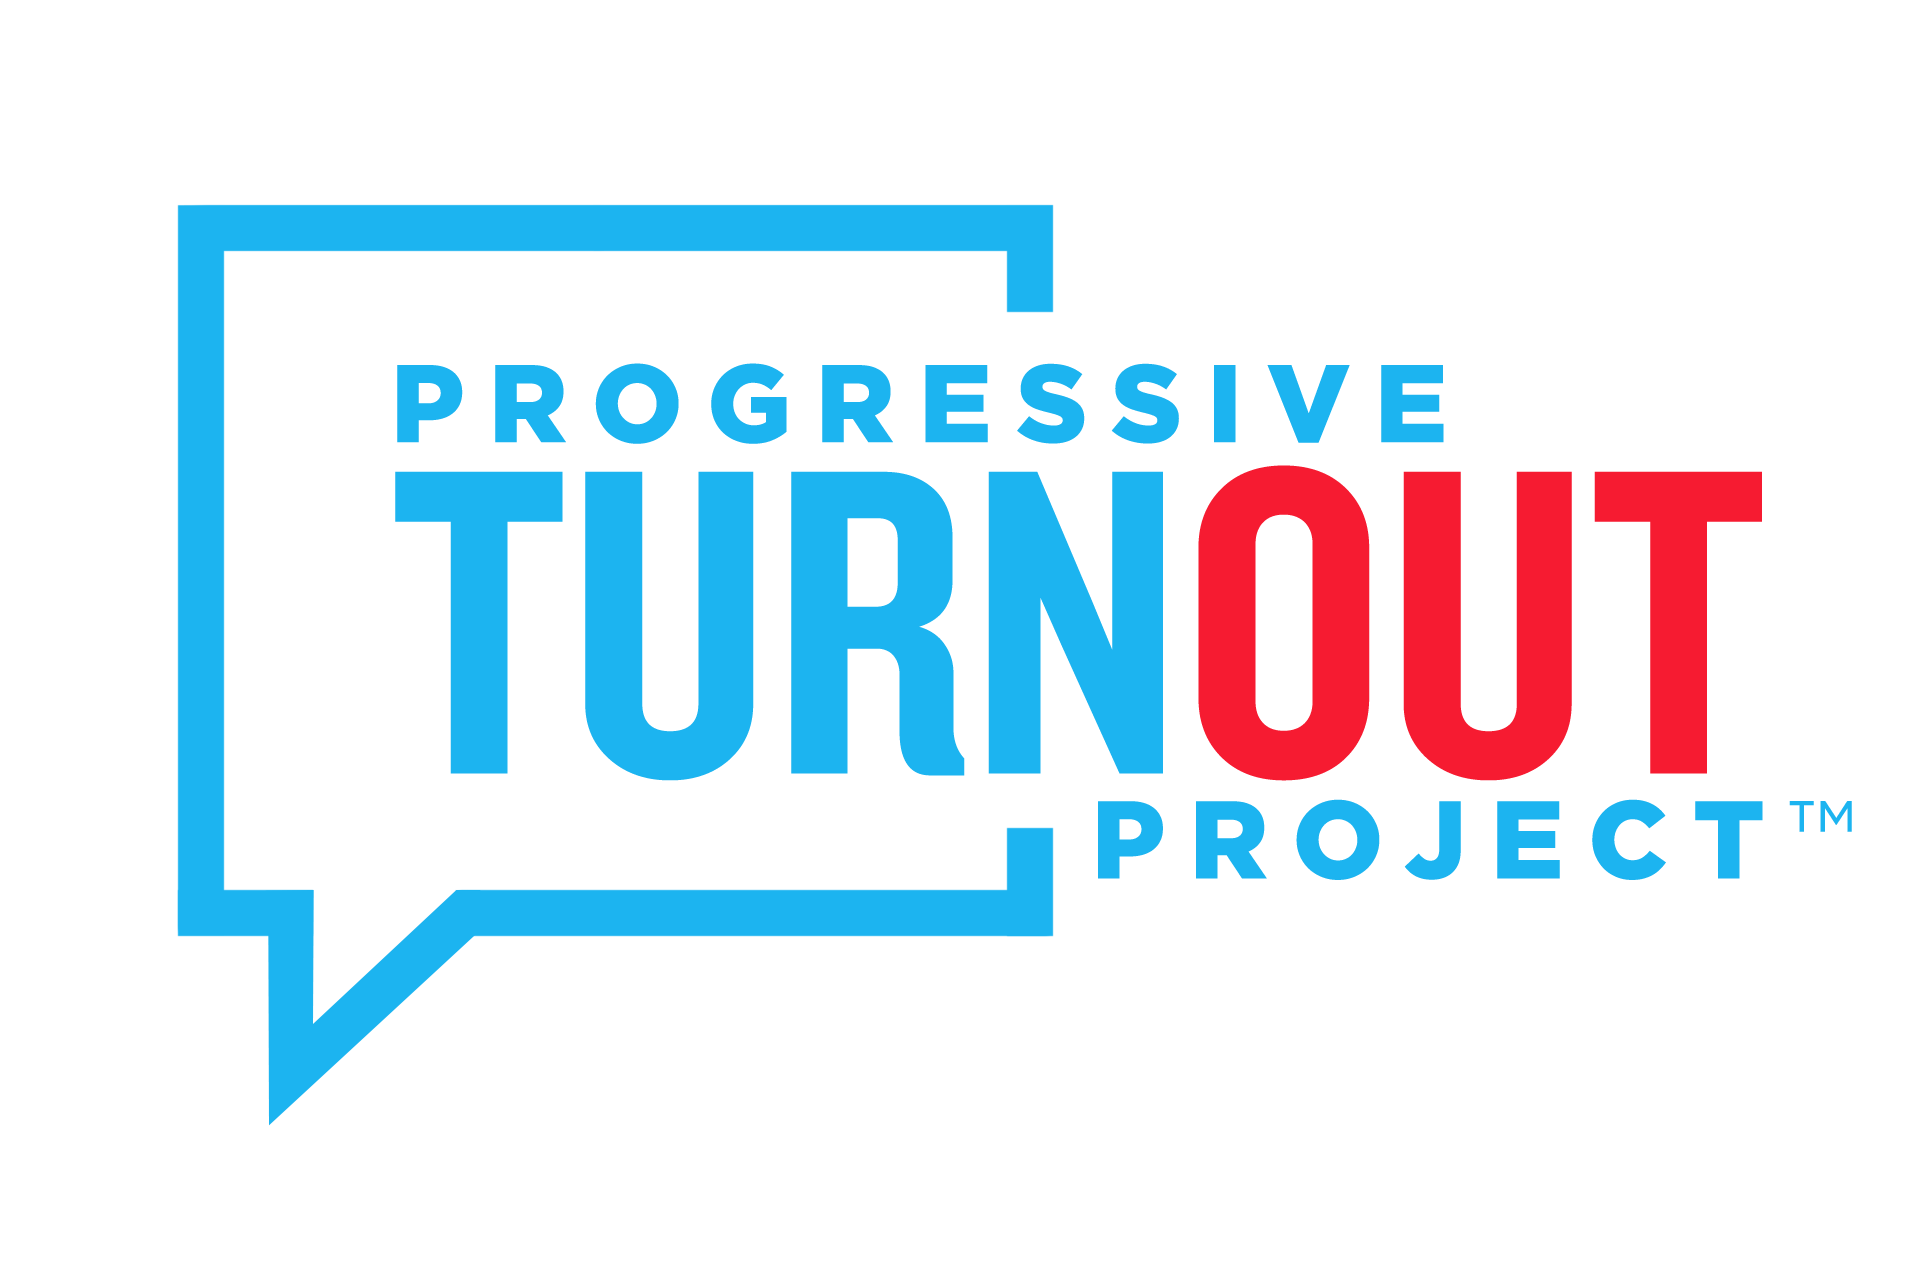 Progressive Turnout Project Republican Senators Expelled